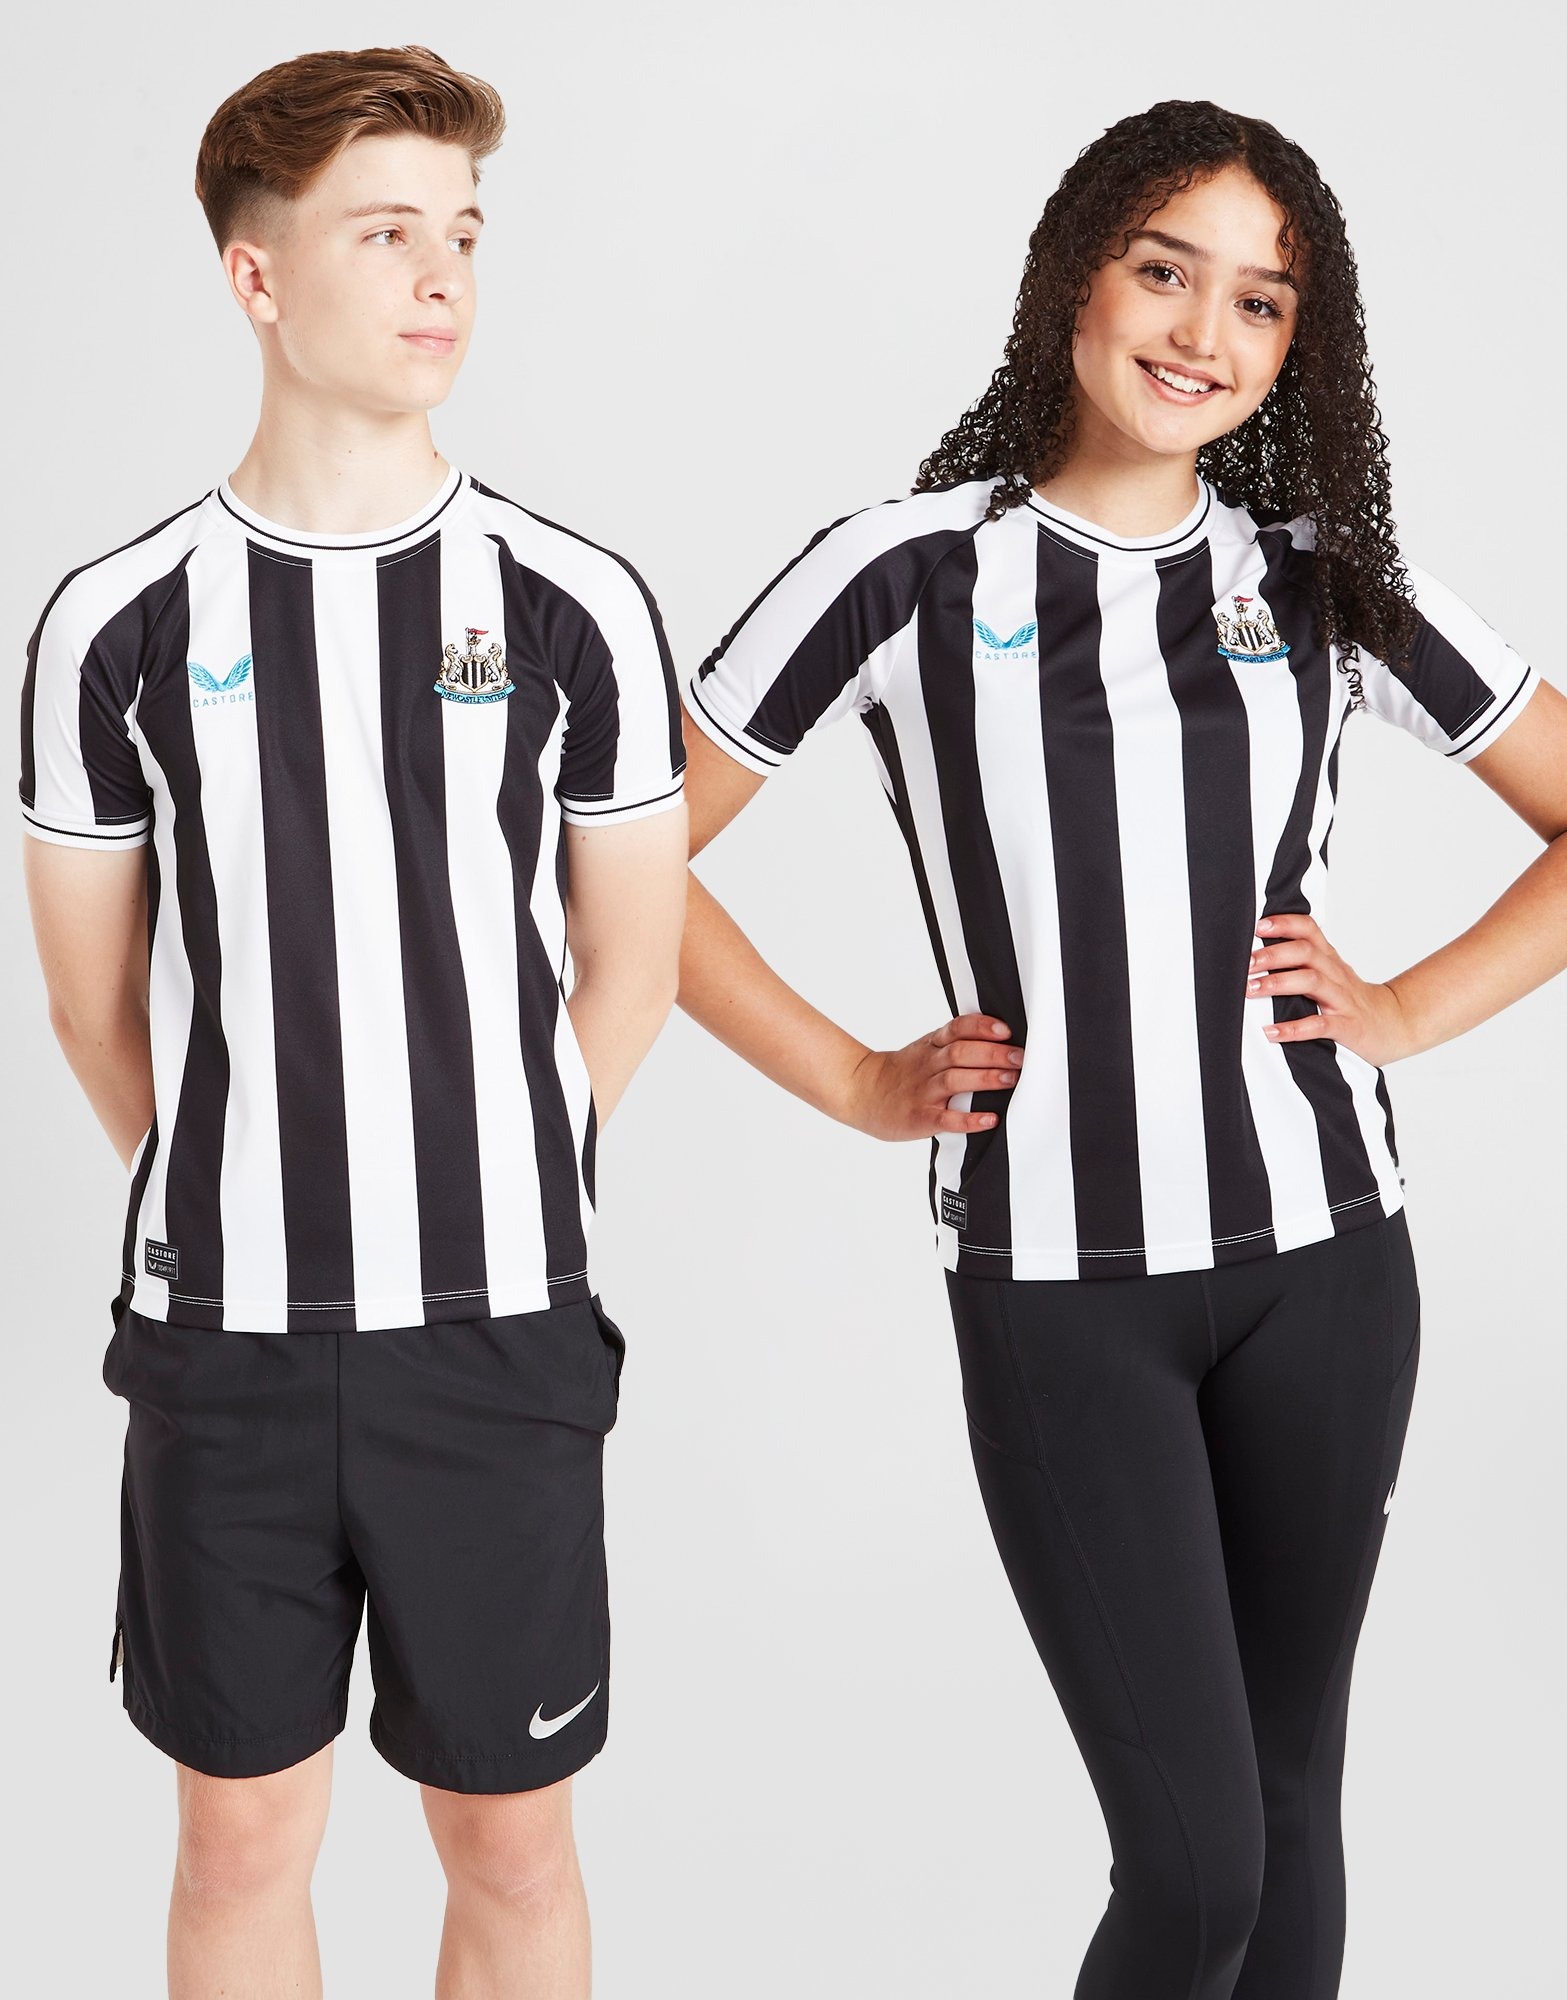 Newcastle United International Club Soccer Fan Shirts for sale